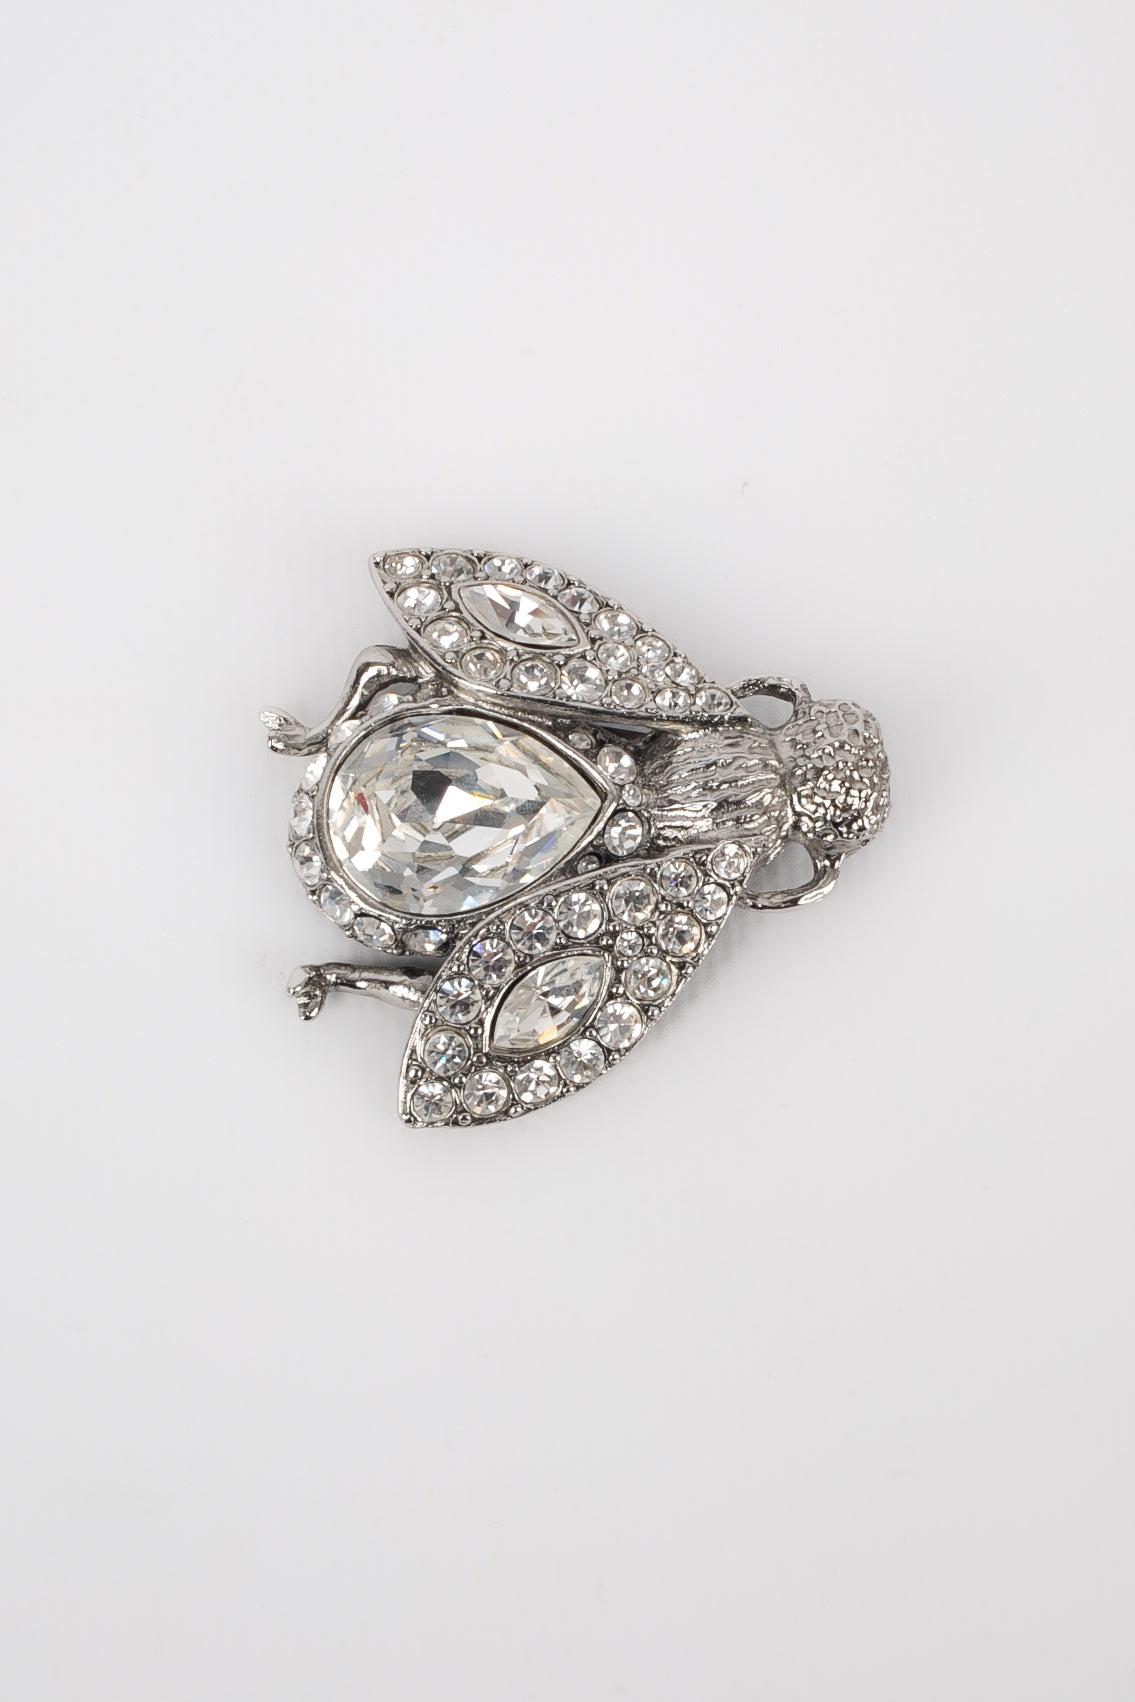 Dior - (Made in France) Silberne Metallbrosche mit Strasssteinen, die eine Biene darstellen.
 
 Zusätzliche Informationen: 
 Zustand: Sehr guter Zustand
 Abmessungen: 4 cm x 4,5 cm
 
 Referenz des Sellers: BR48
